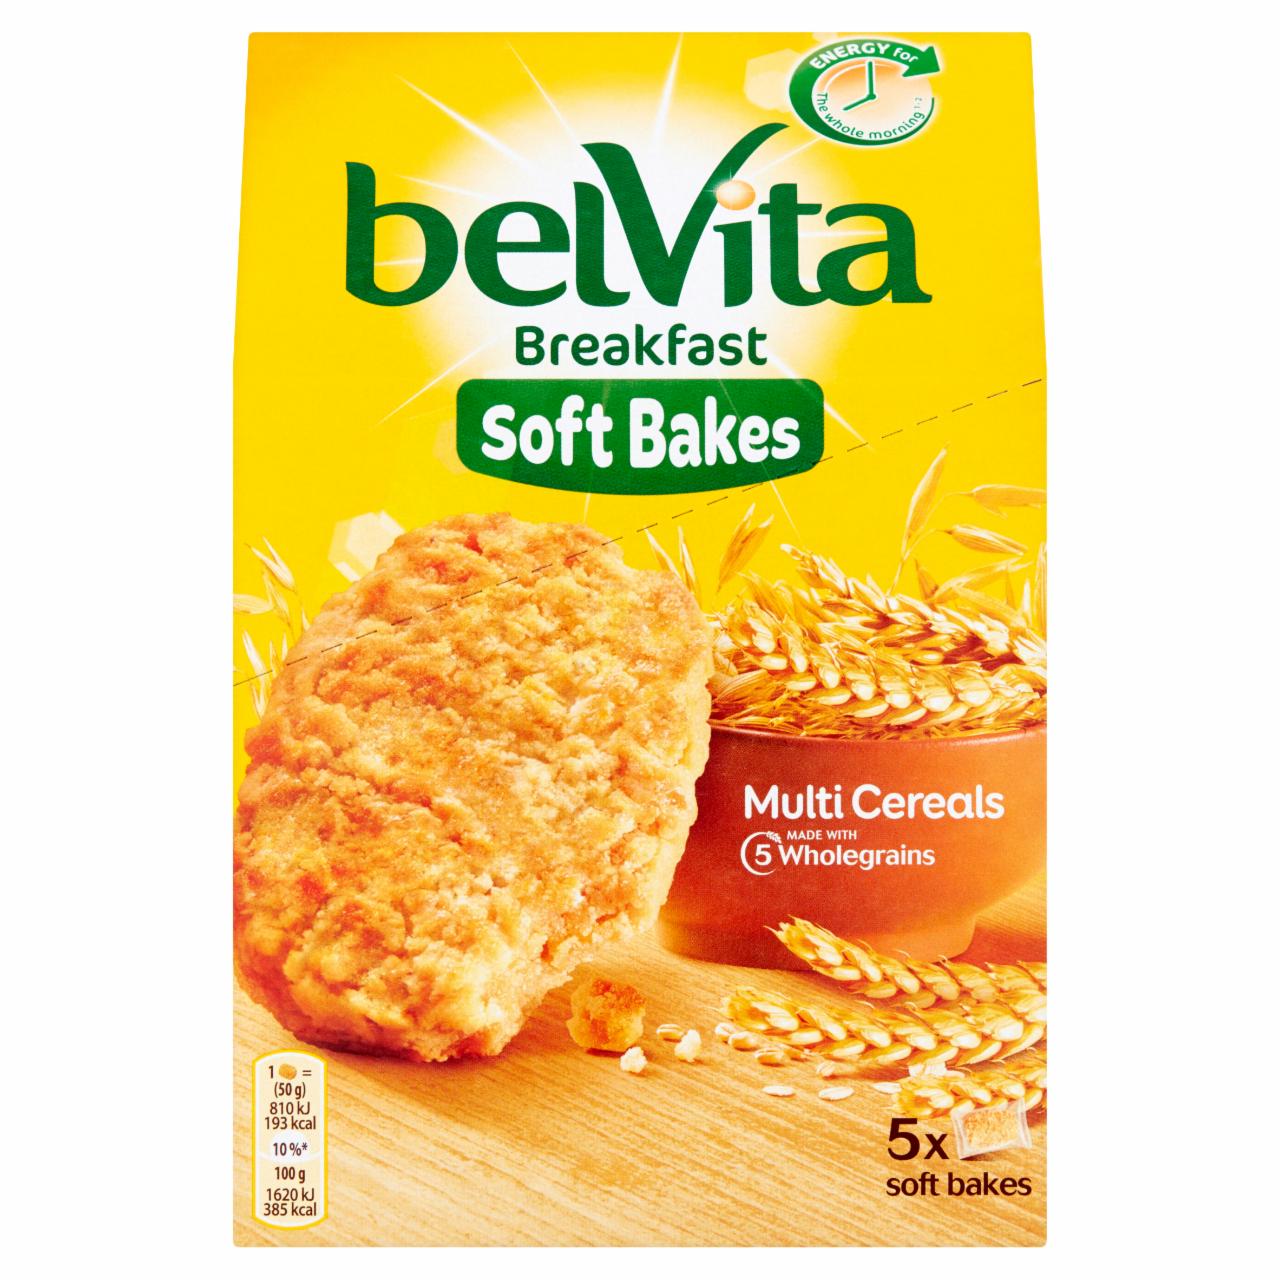 Zdjęcia - belVita Breakfast Multi Cereals Ciastka zbożowe 250 g